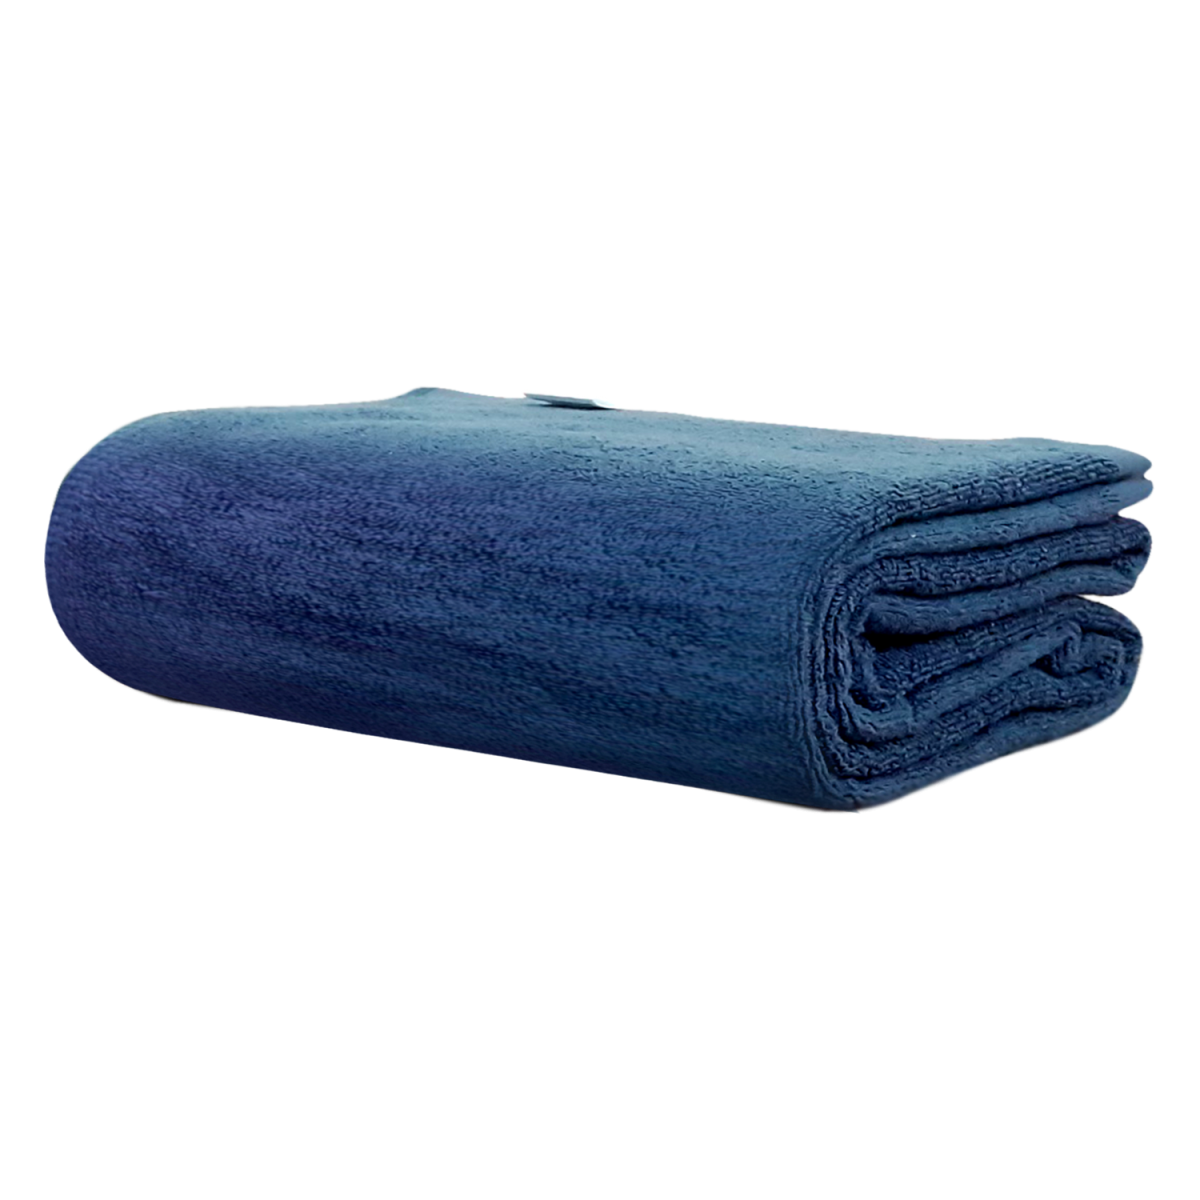 Khăn tắm BESTKE 100% cotton xanh đậm, 140*70cm, 400g/cái